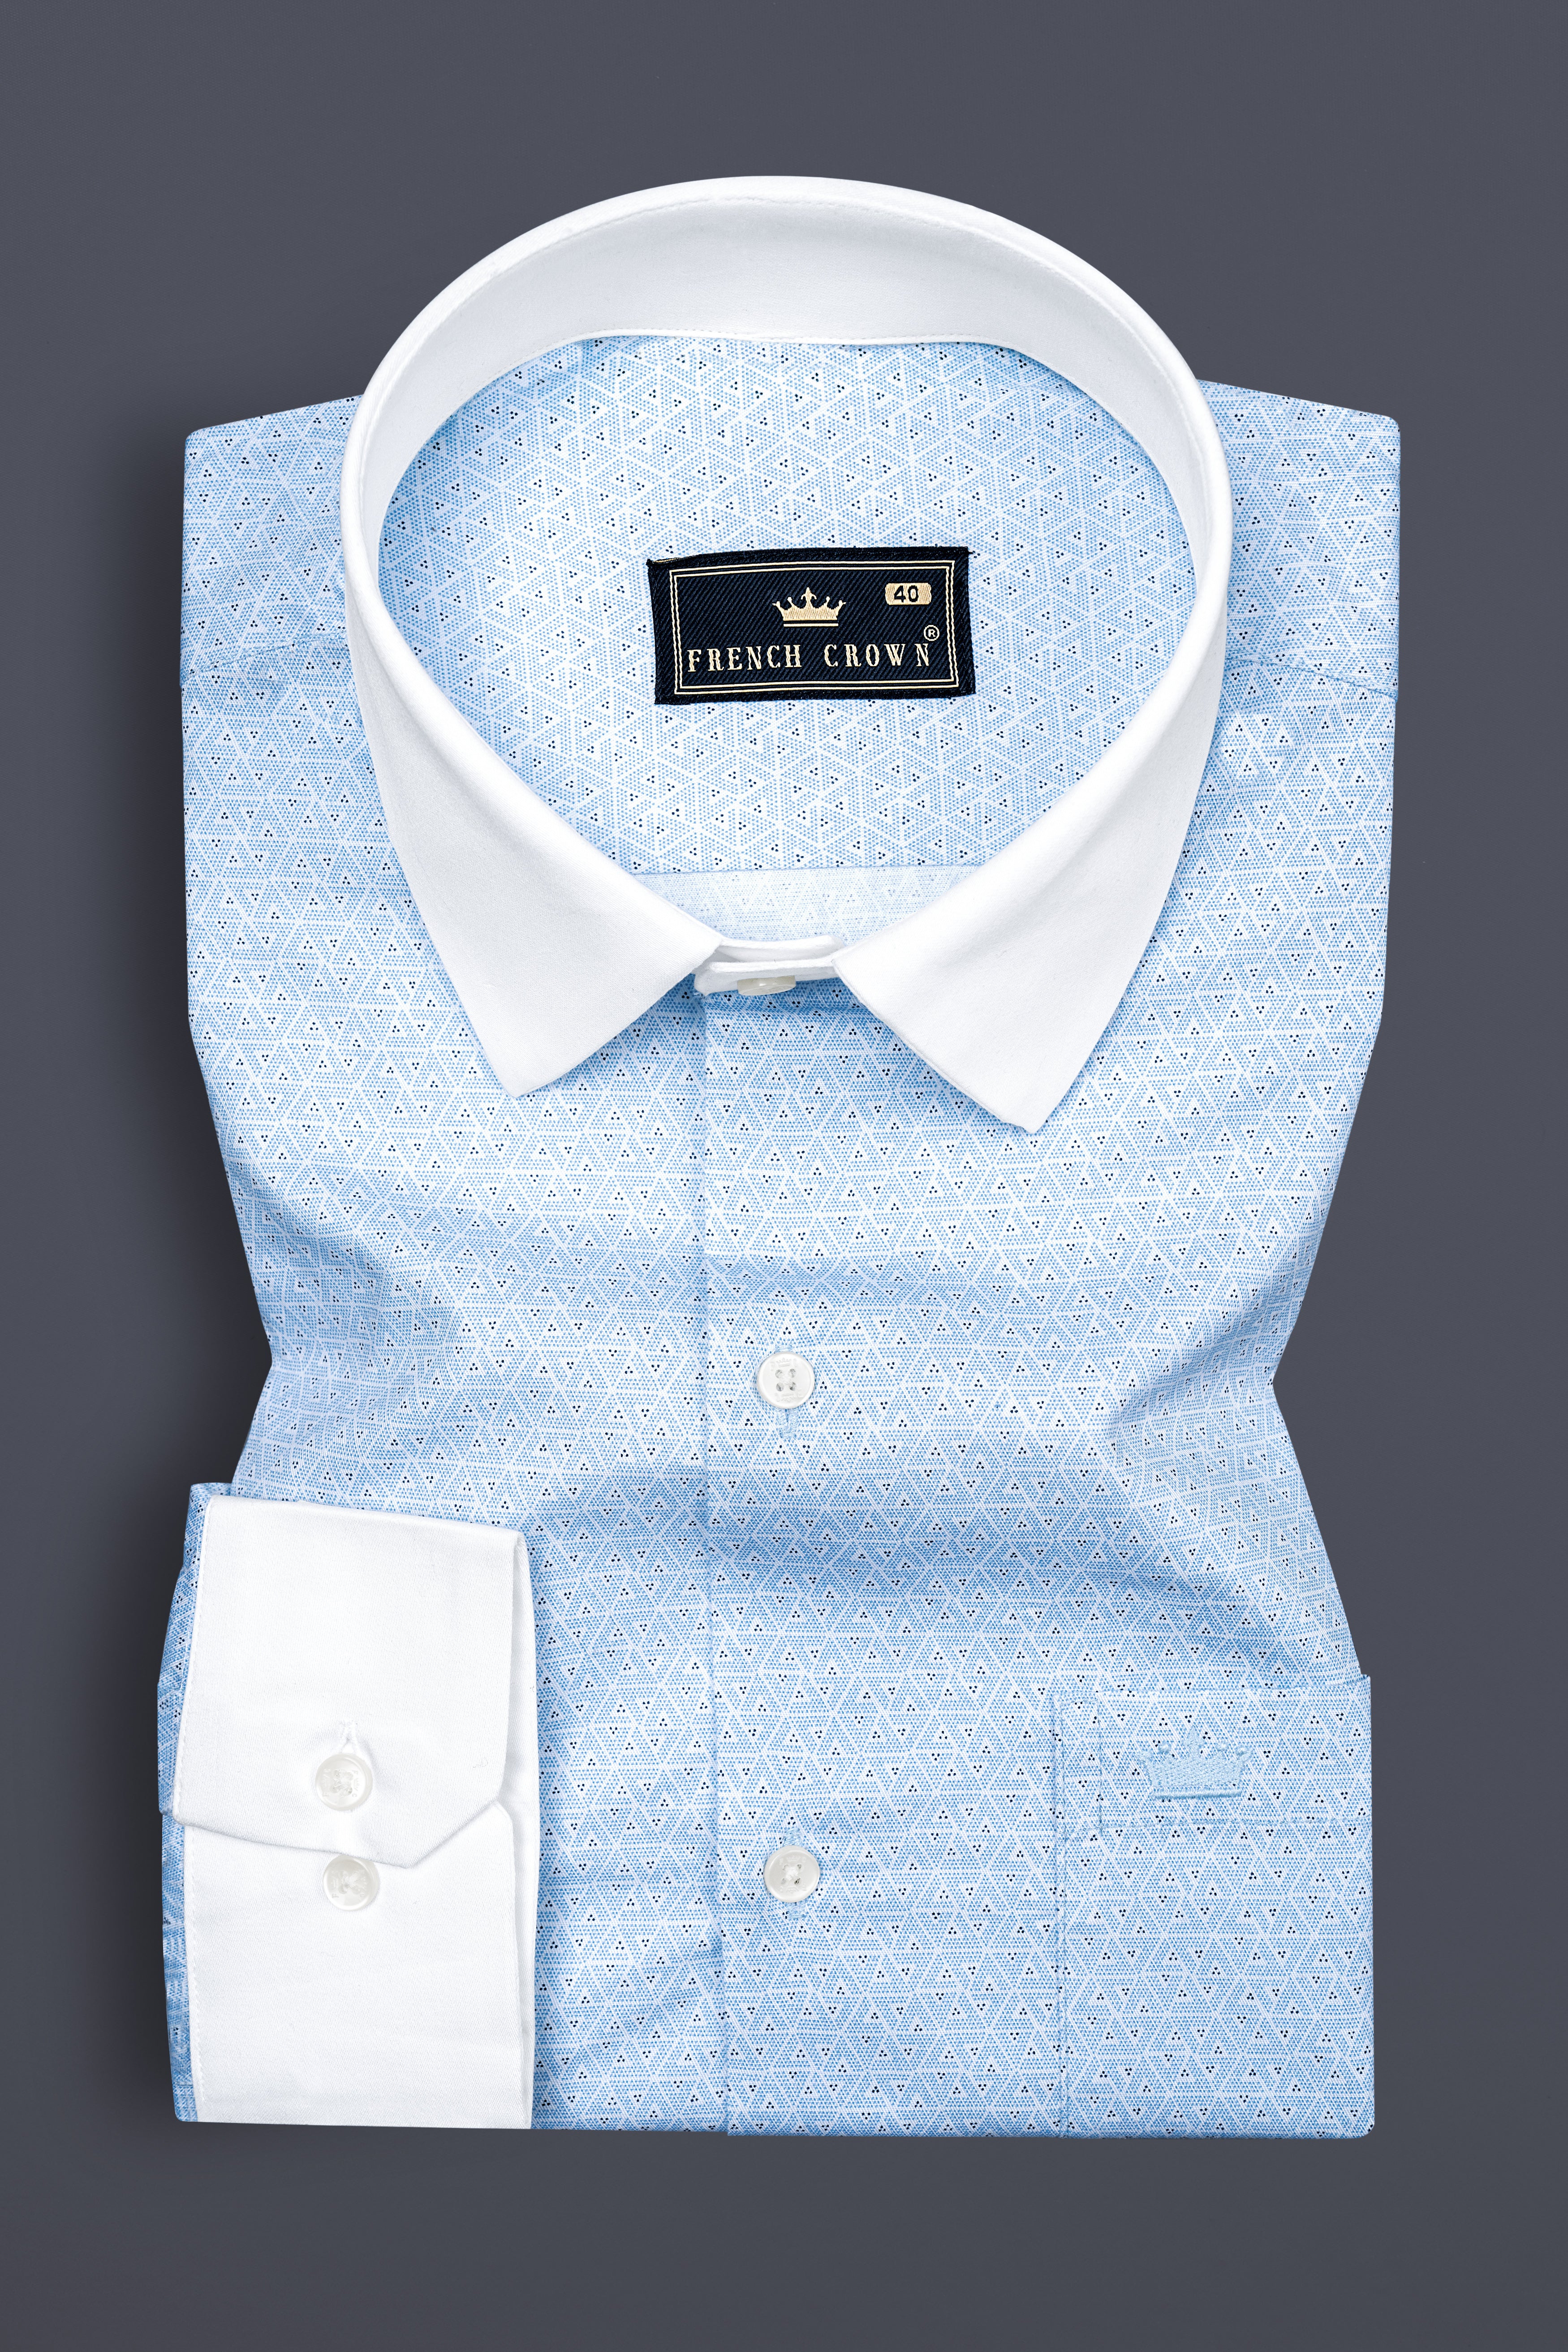 Glacier Blue Print Super Soft Premium Cotton Shirt